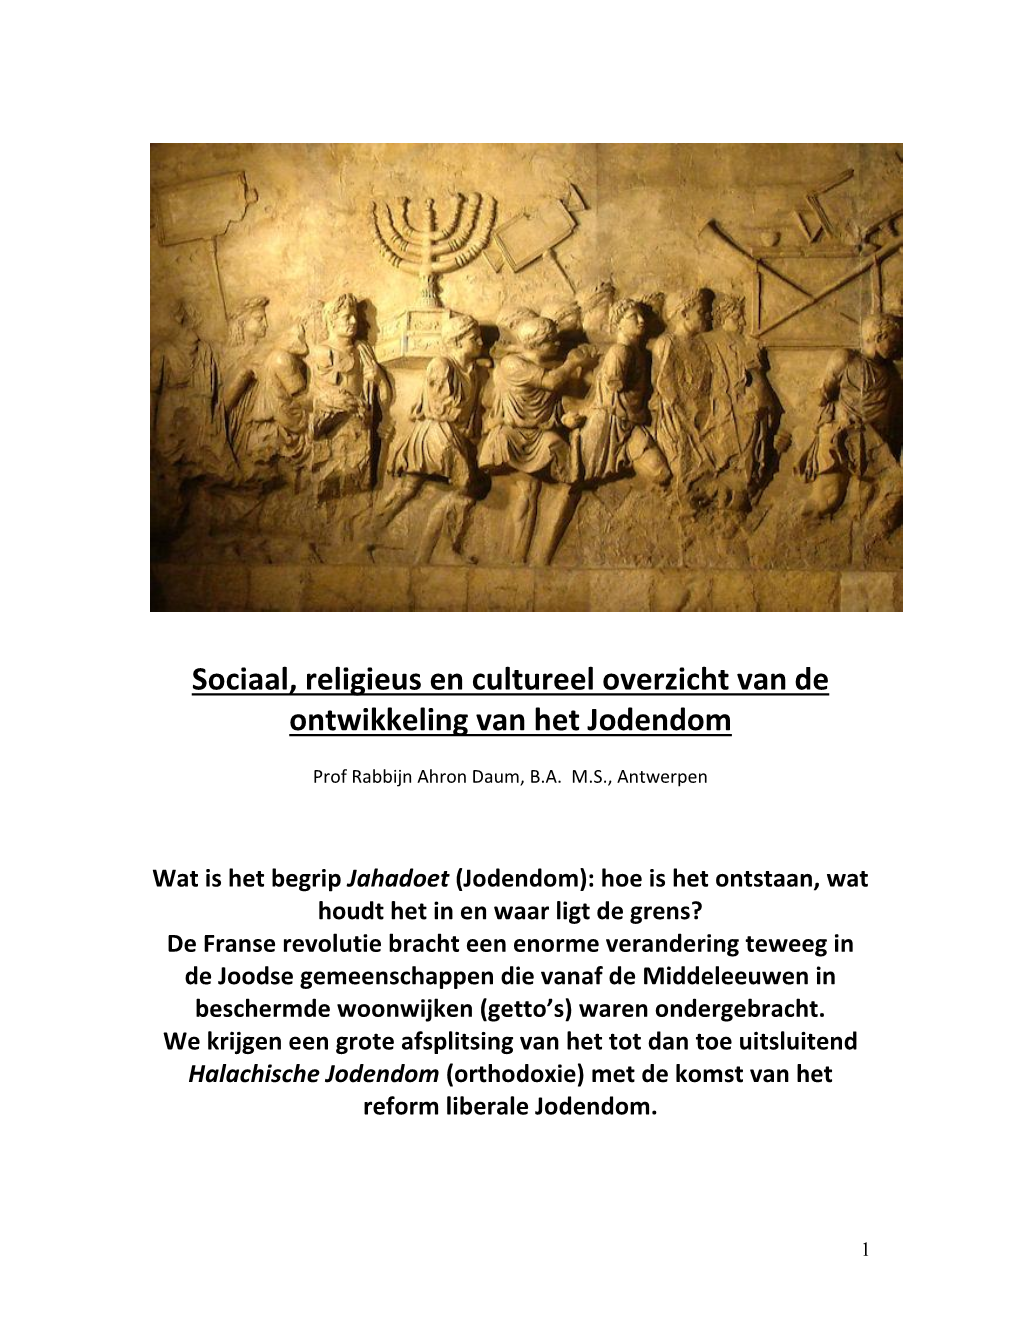 Sociaal, Religieus En Cultureel Overzicht Van De Ontwikkeling Van Het Jodendom